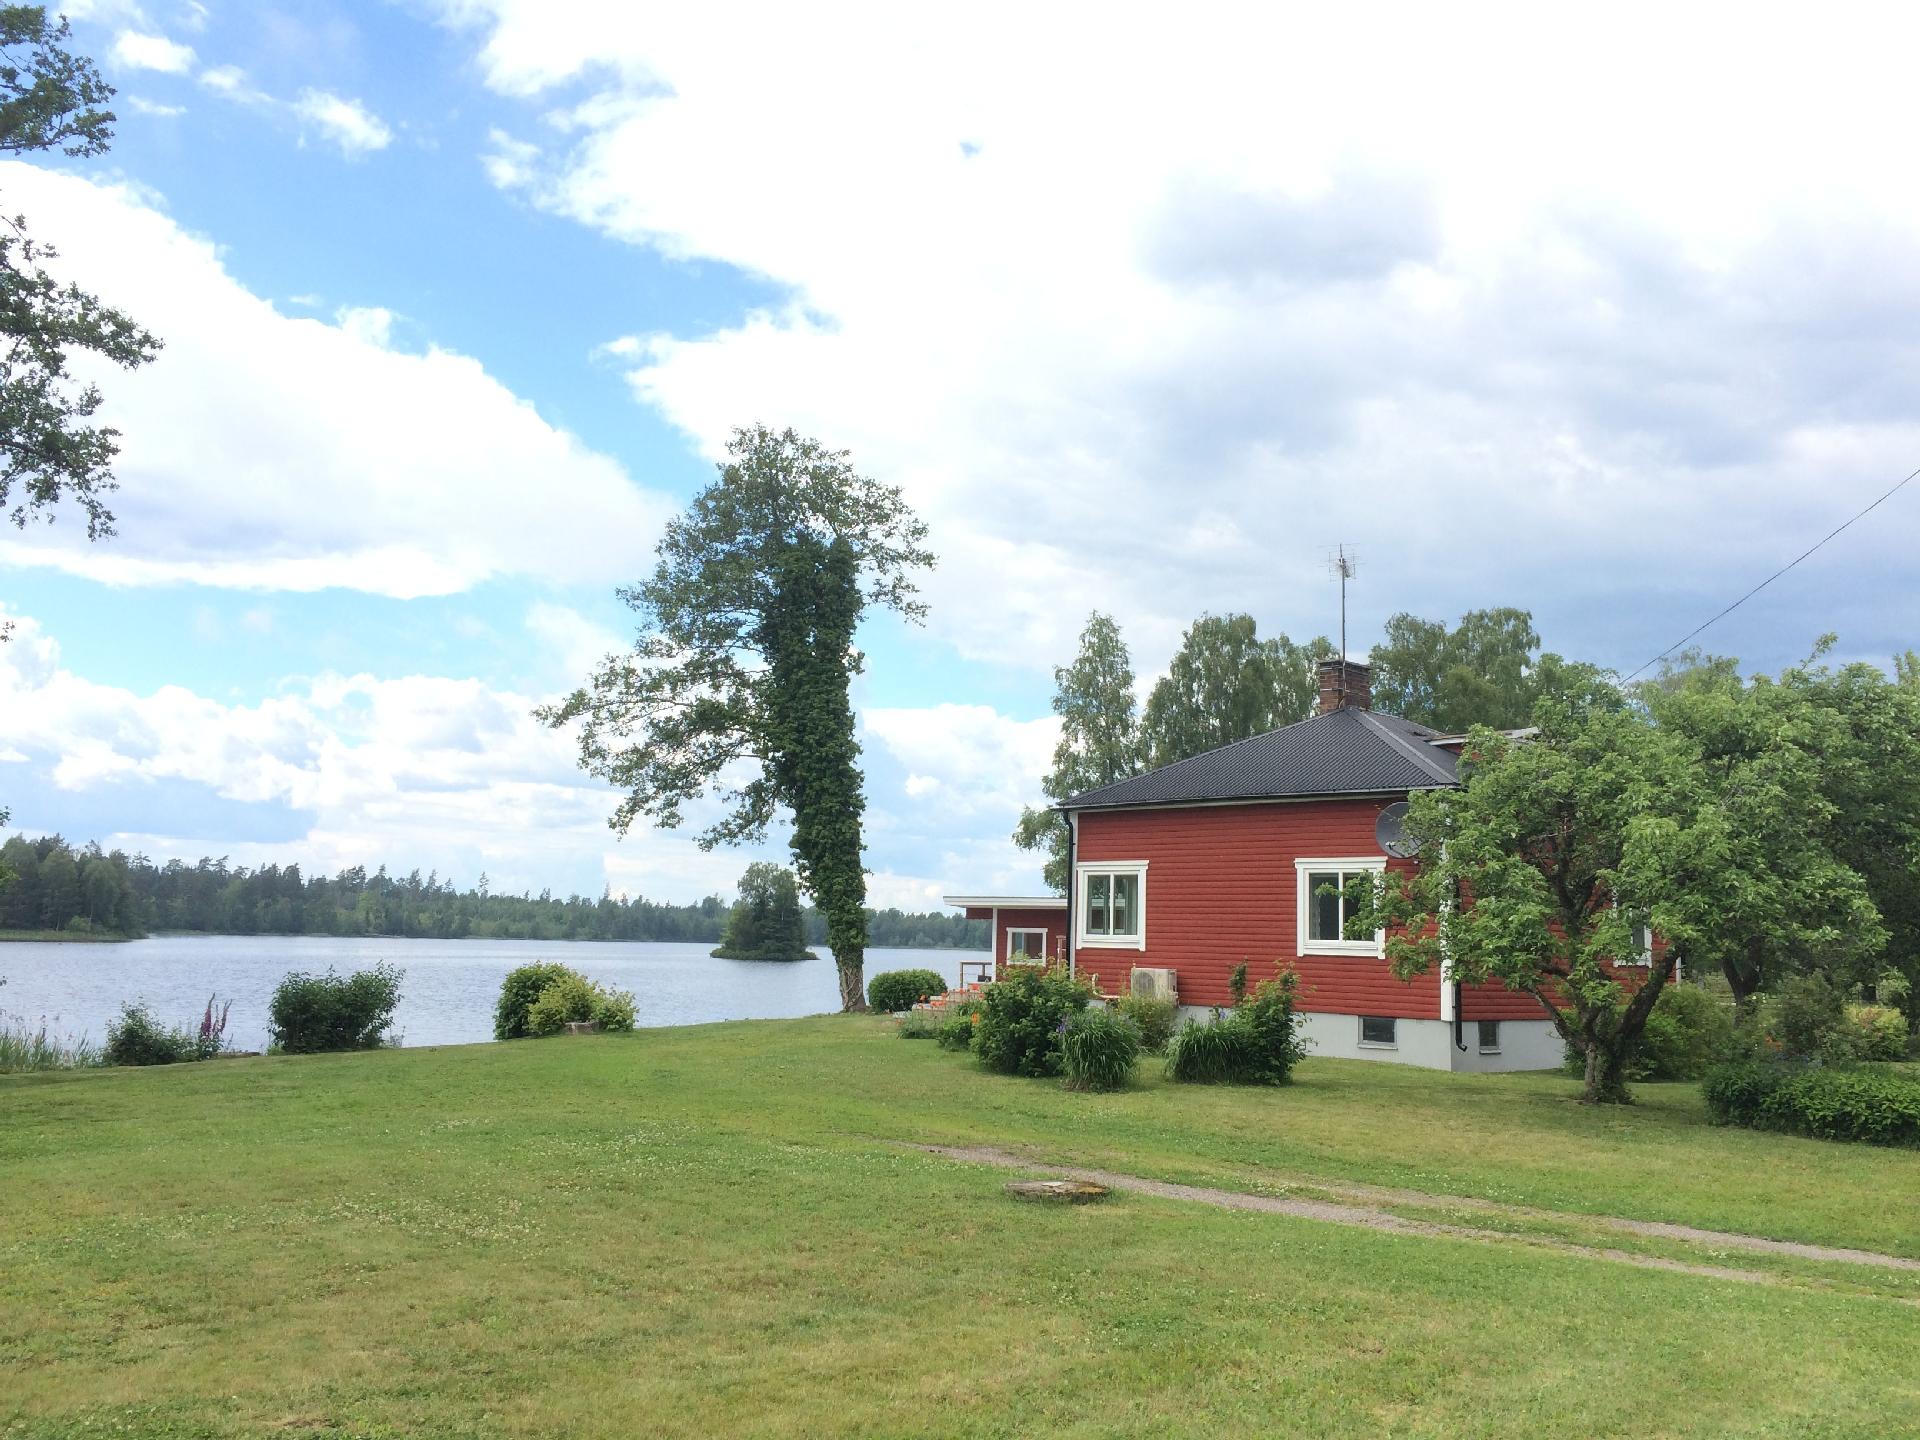 Ferienhaus mit Garten und Holzterrasse direkt am S Ferienhaus in Schweden